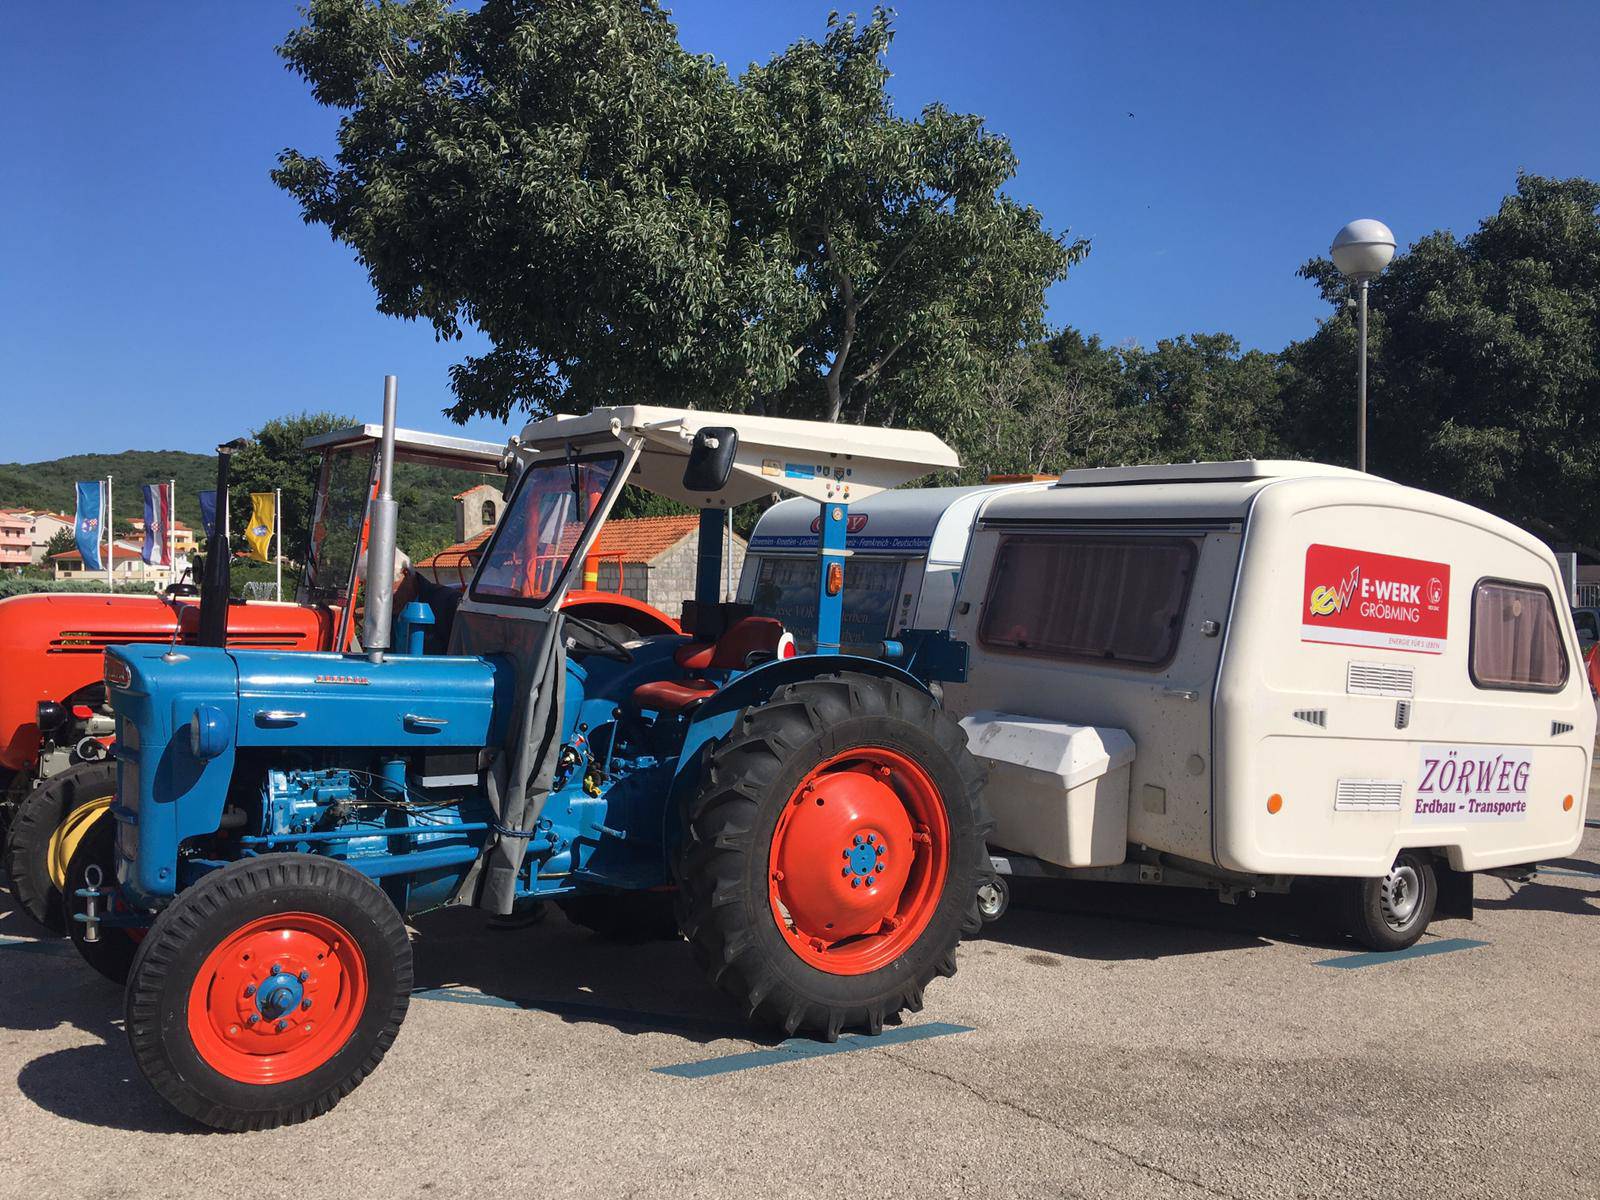 Dva prijatelja putuju iz Austrije s traktorom i prolaze Europu...